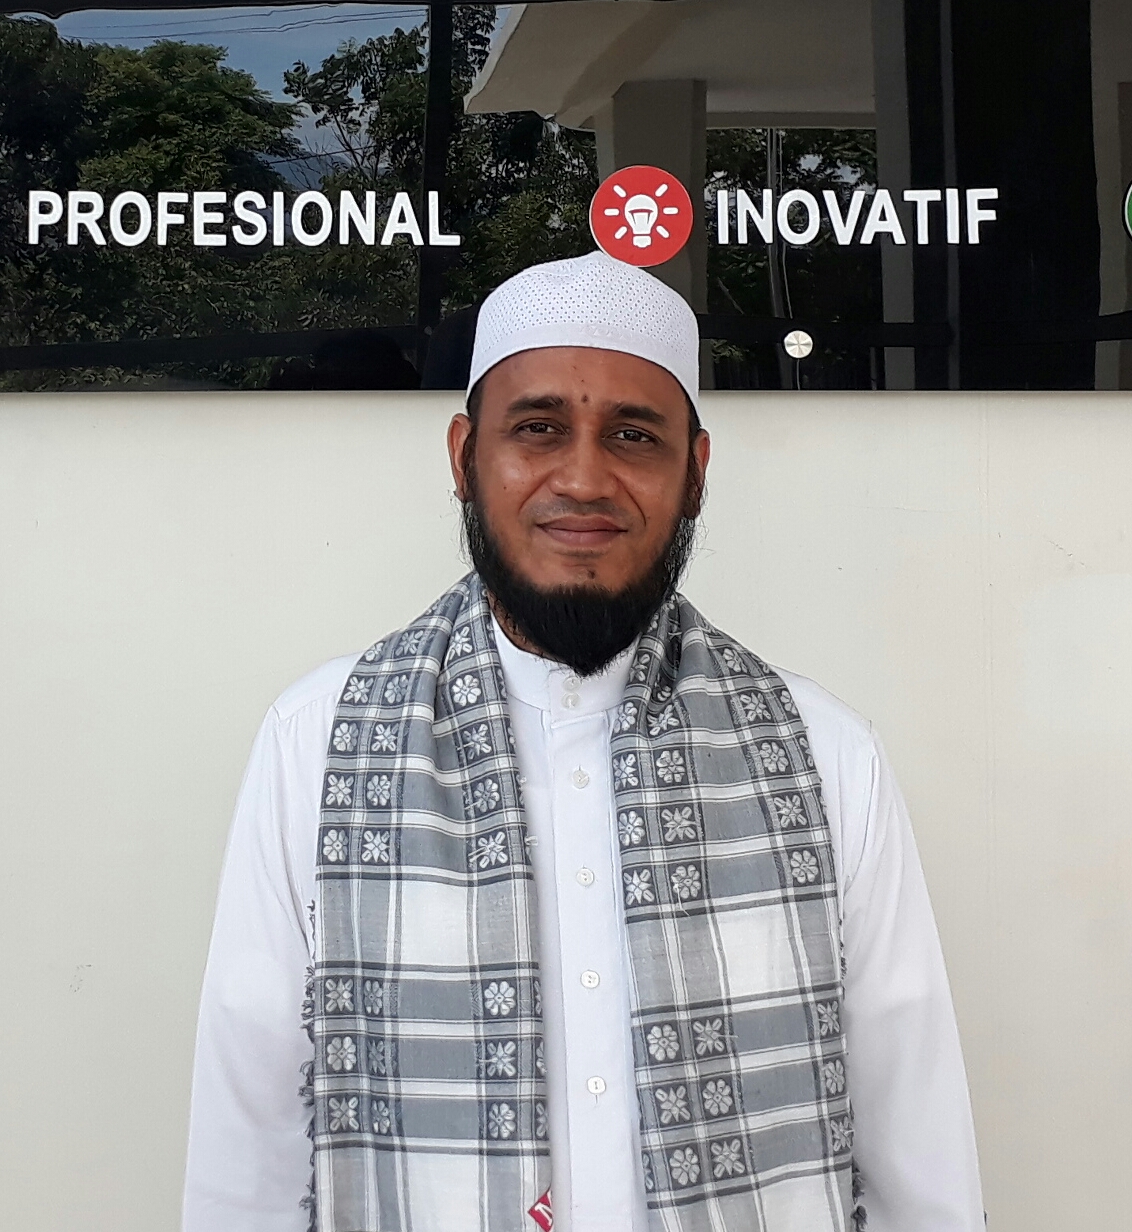 MIUMI Aceh: Penikaman kepada Syaikh Ali Jaber adalah Tindakan Terorisme